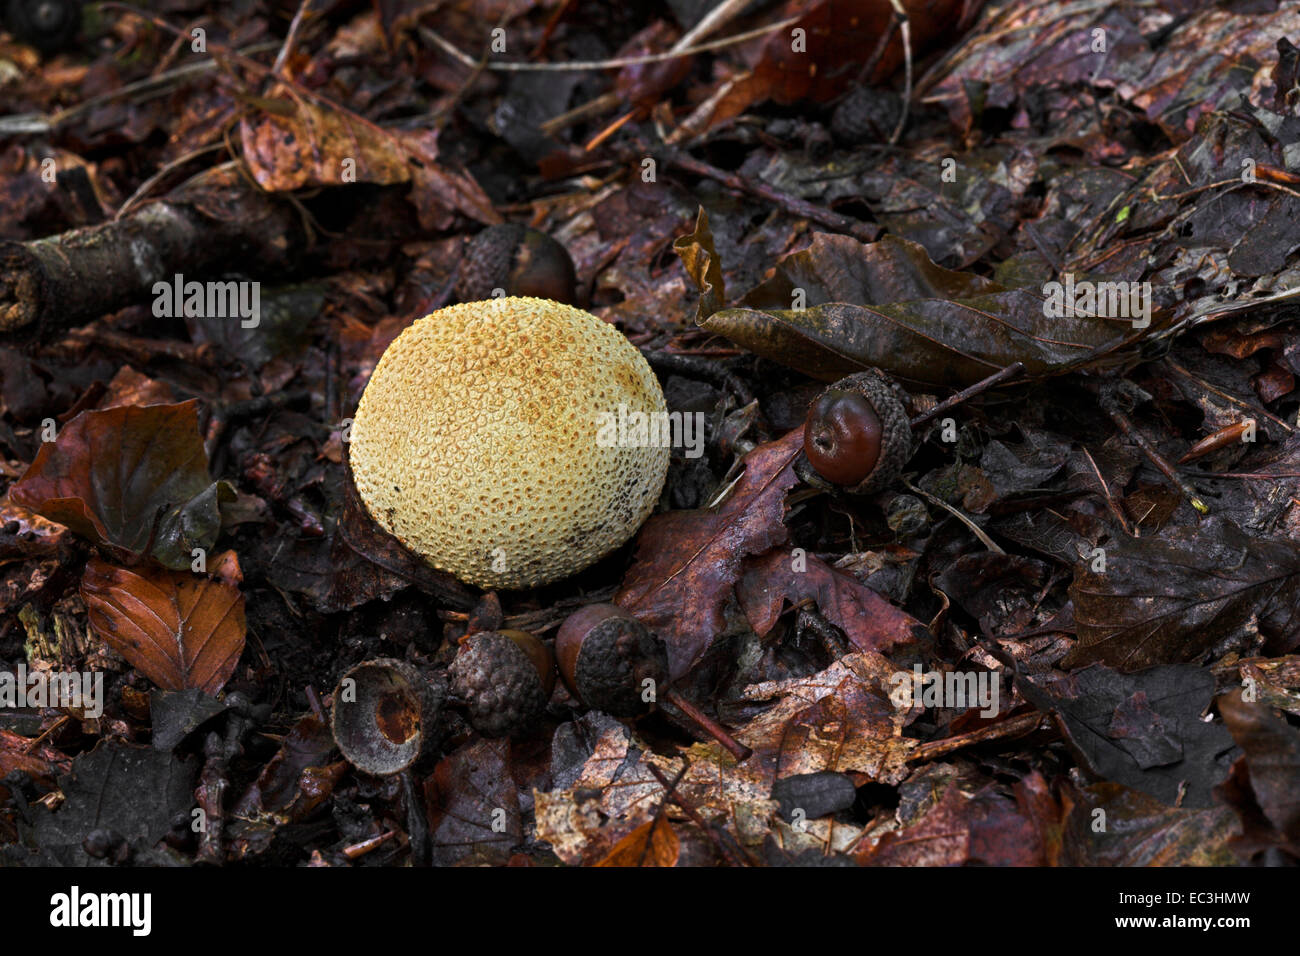 Puff ball creciendo entre la hojarasca en el suelo del bosque. Foto de stock